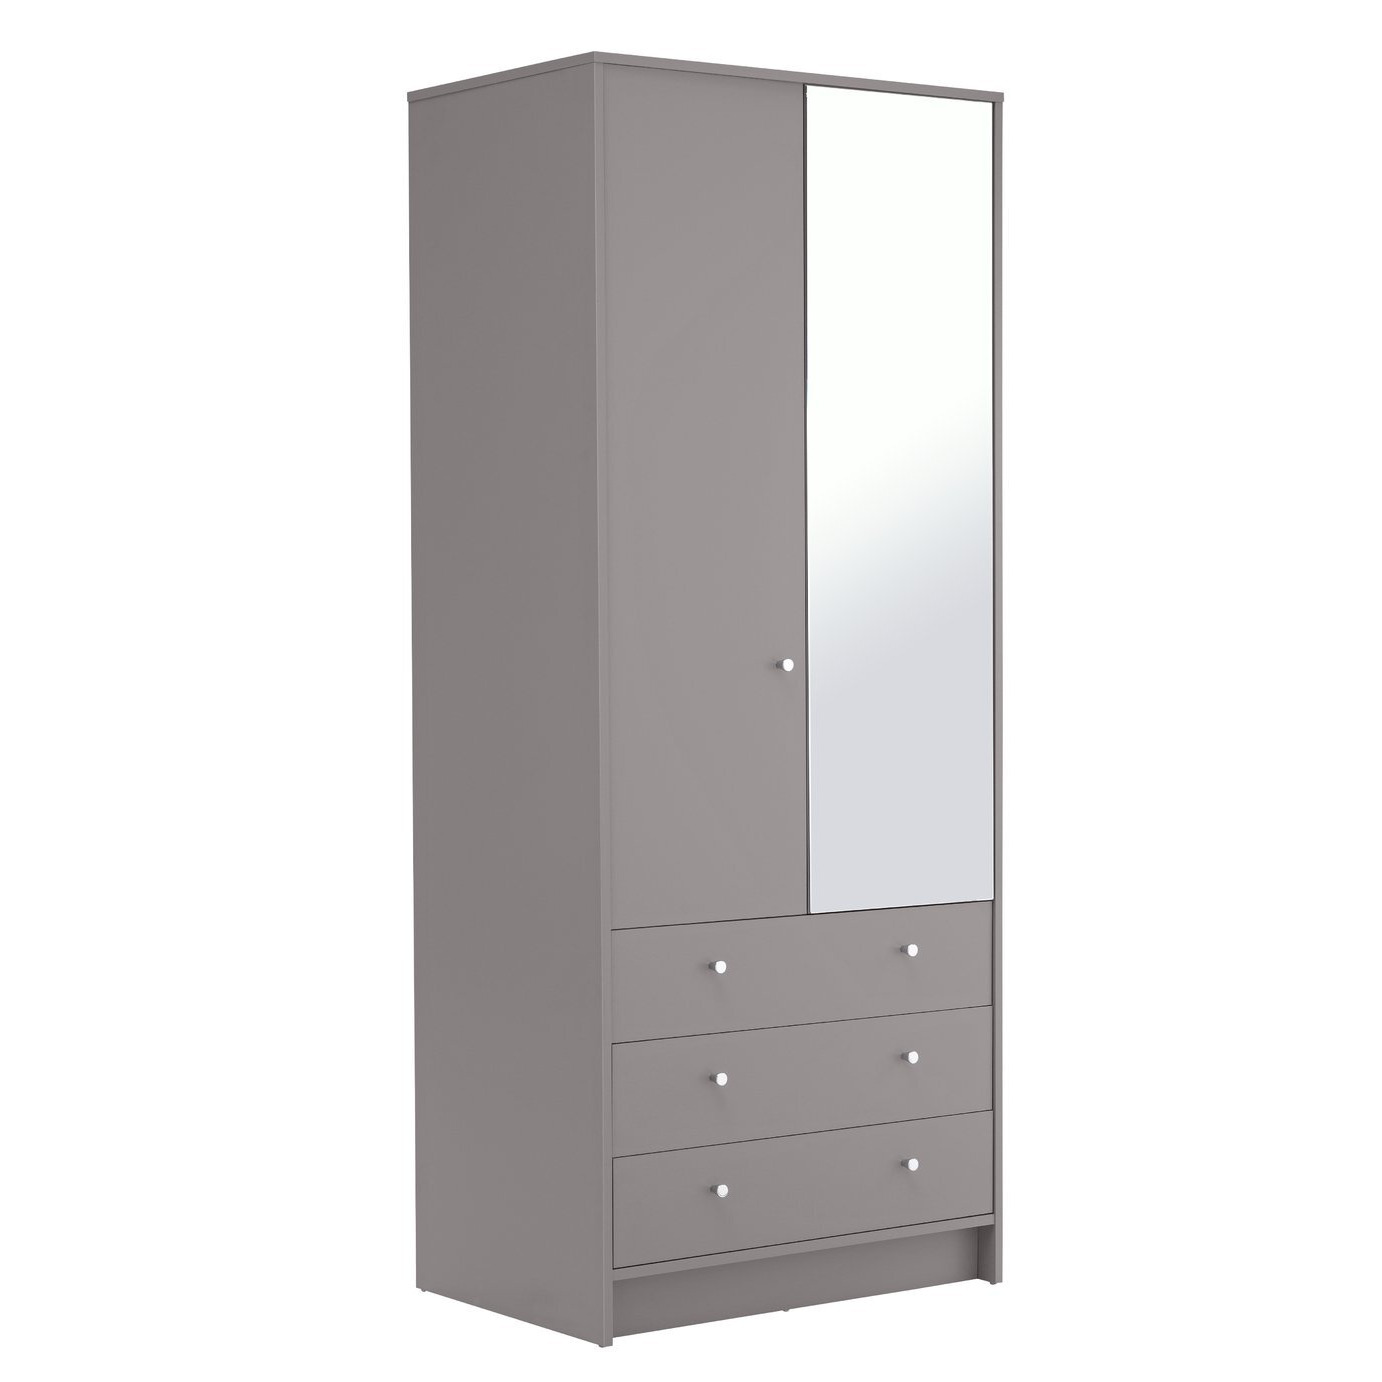 Argos Home Malibu 2 Door 3 Drawer Mirror Wardrobe - Grey - image 1